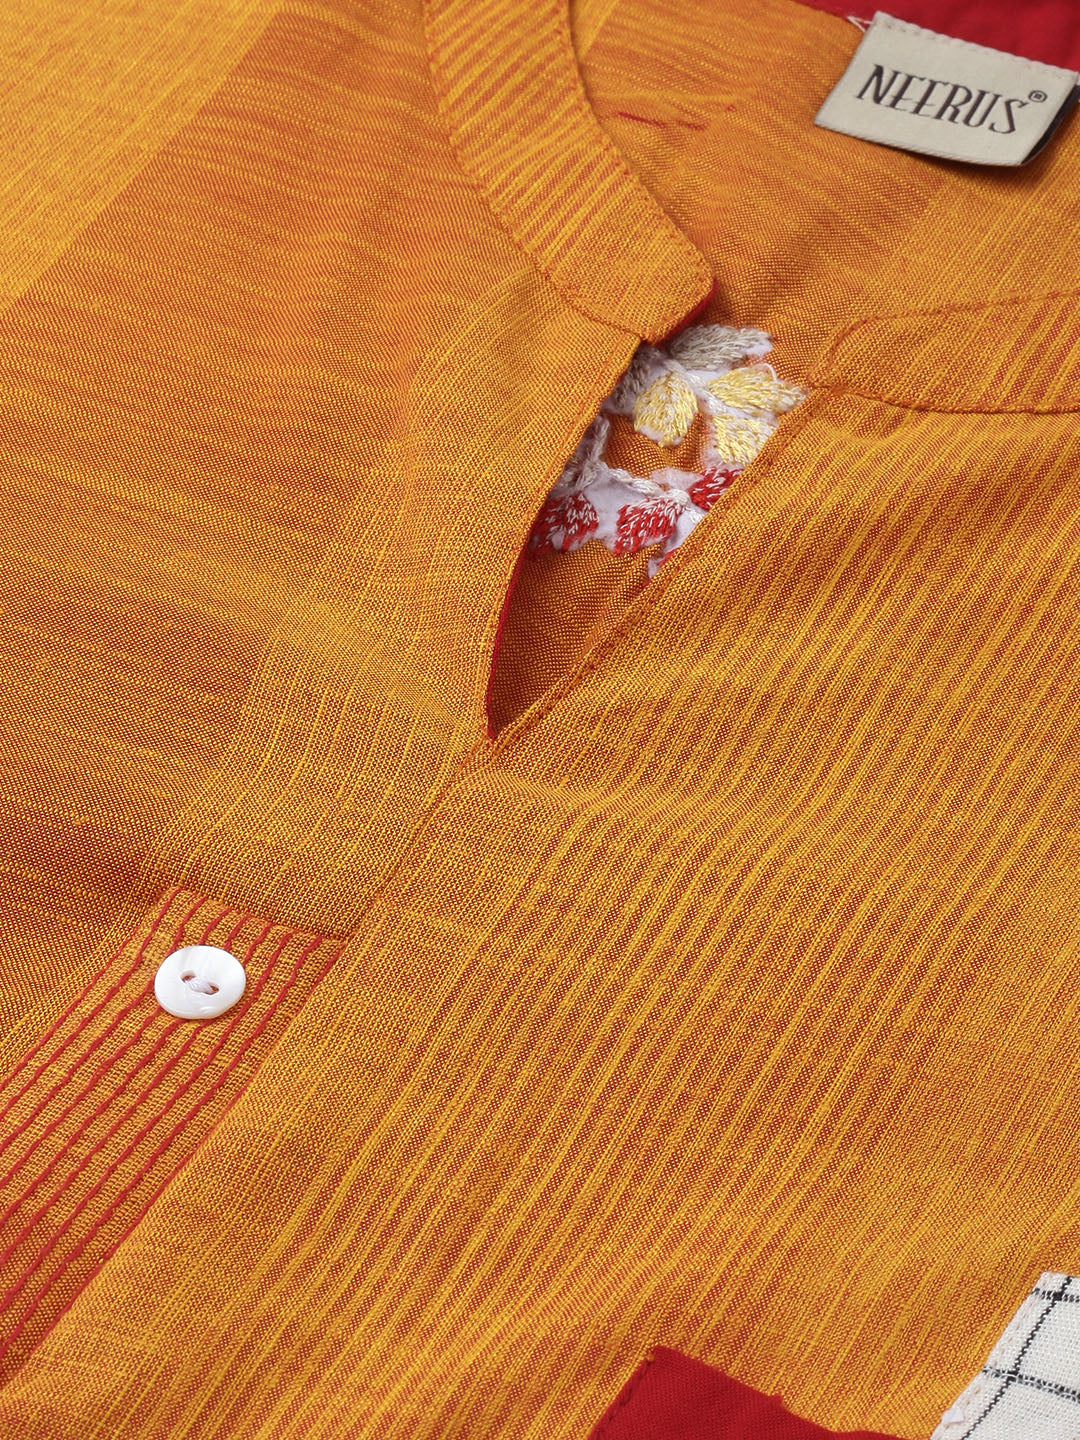 Neeru's Yellow & Orange Embroidered Straight Kurta